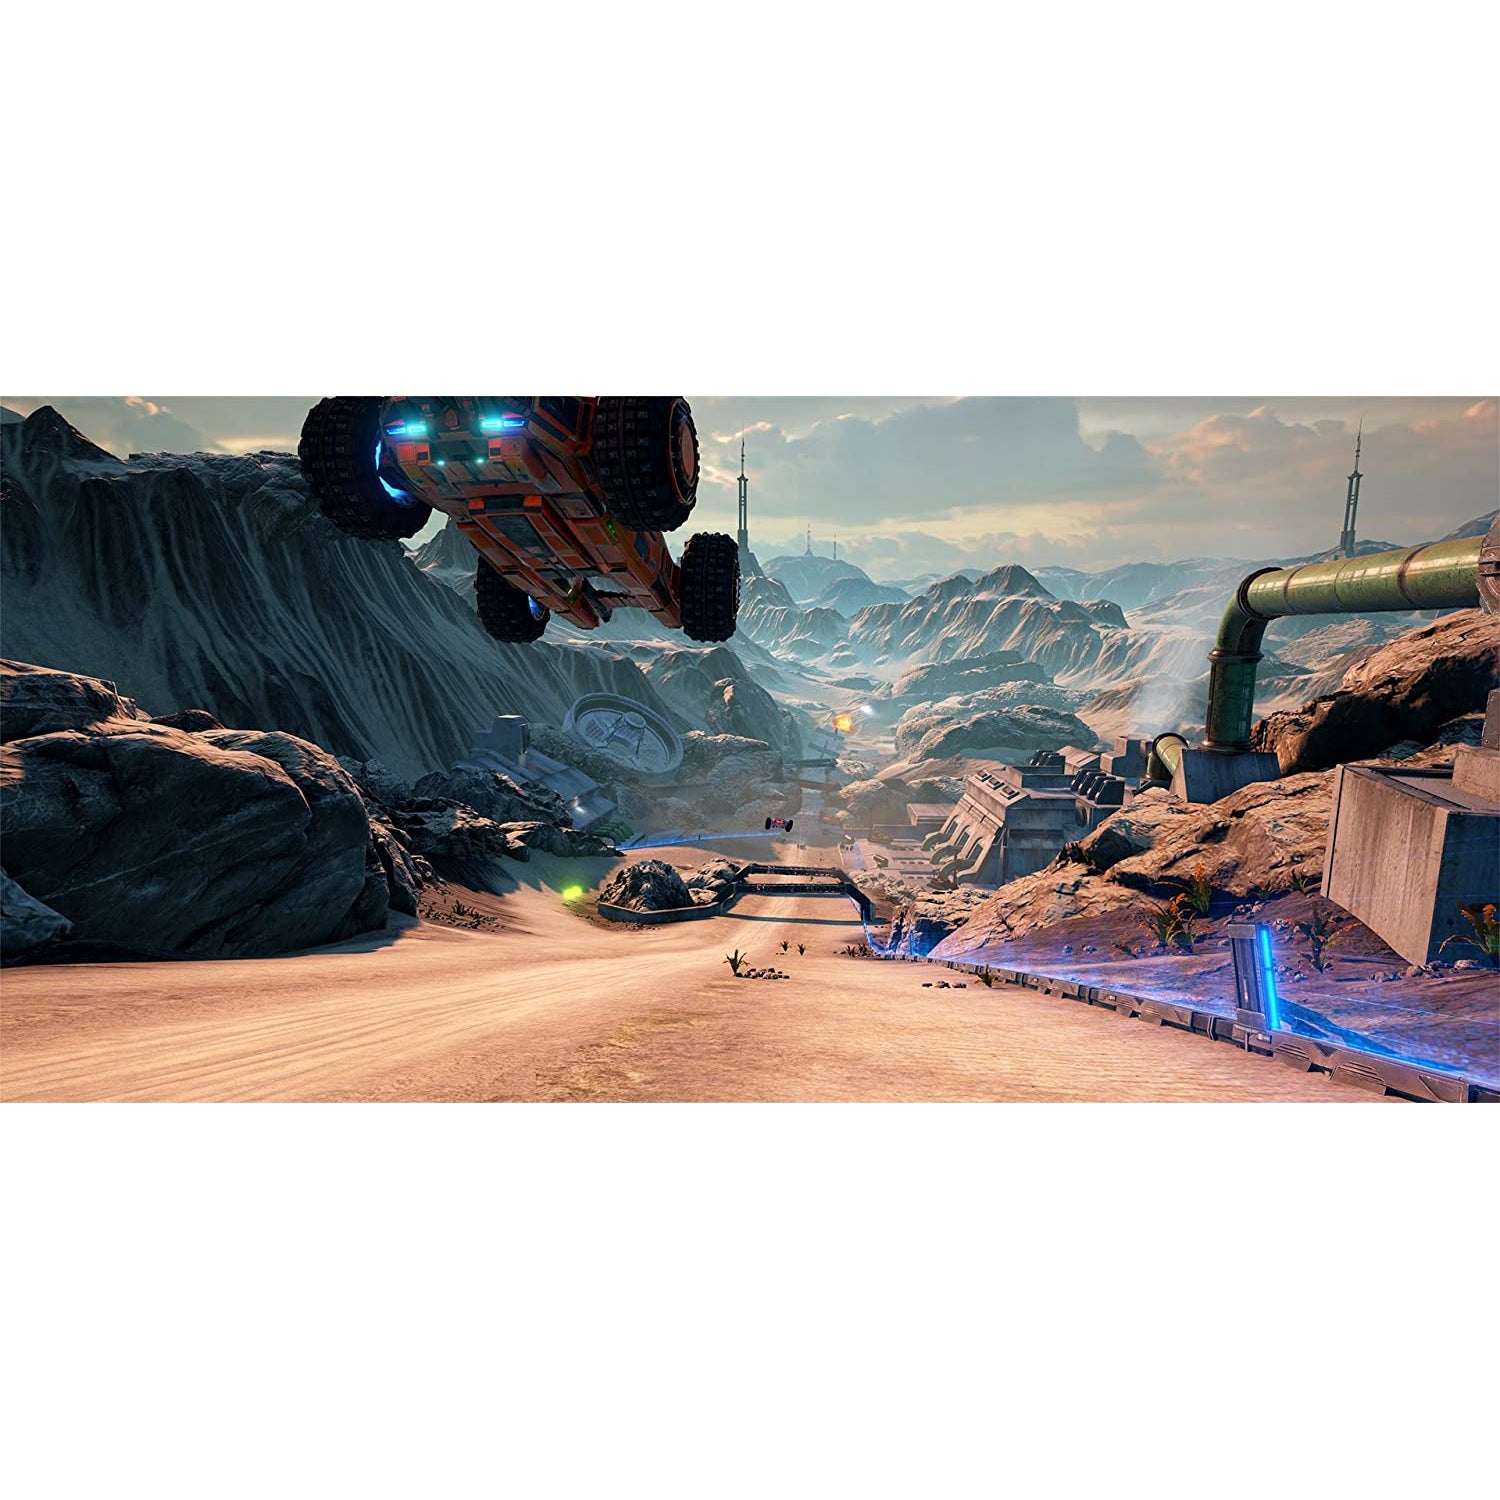 Grip: Combat Racing (PS4)